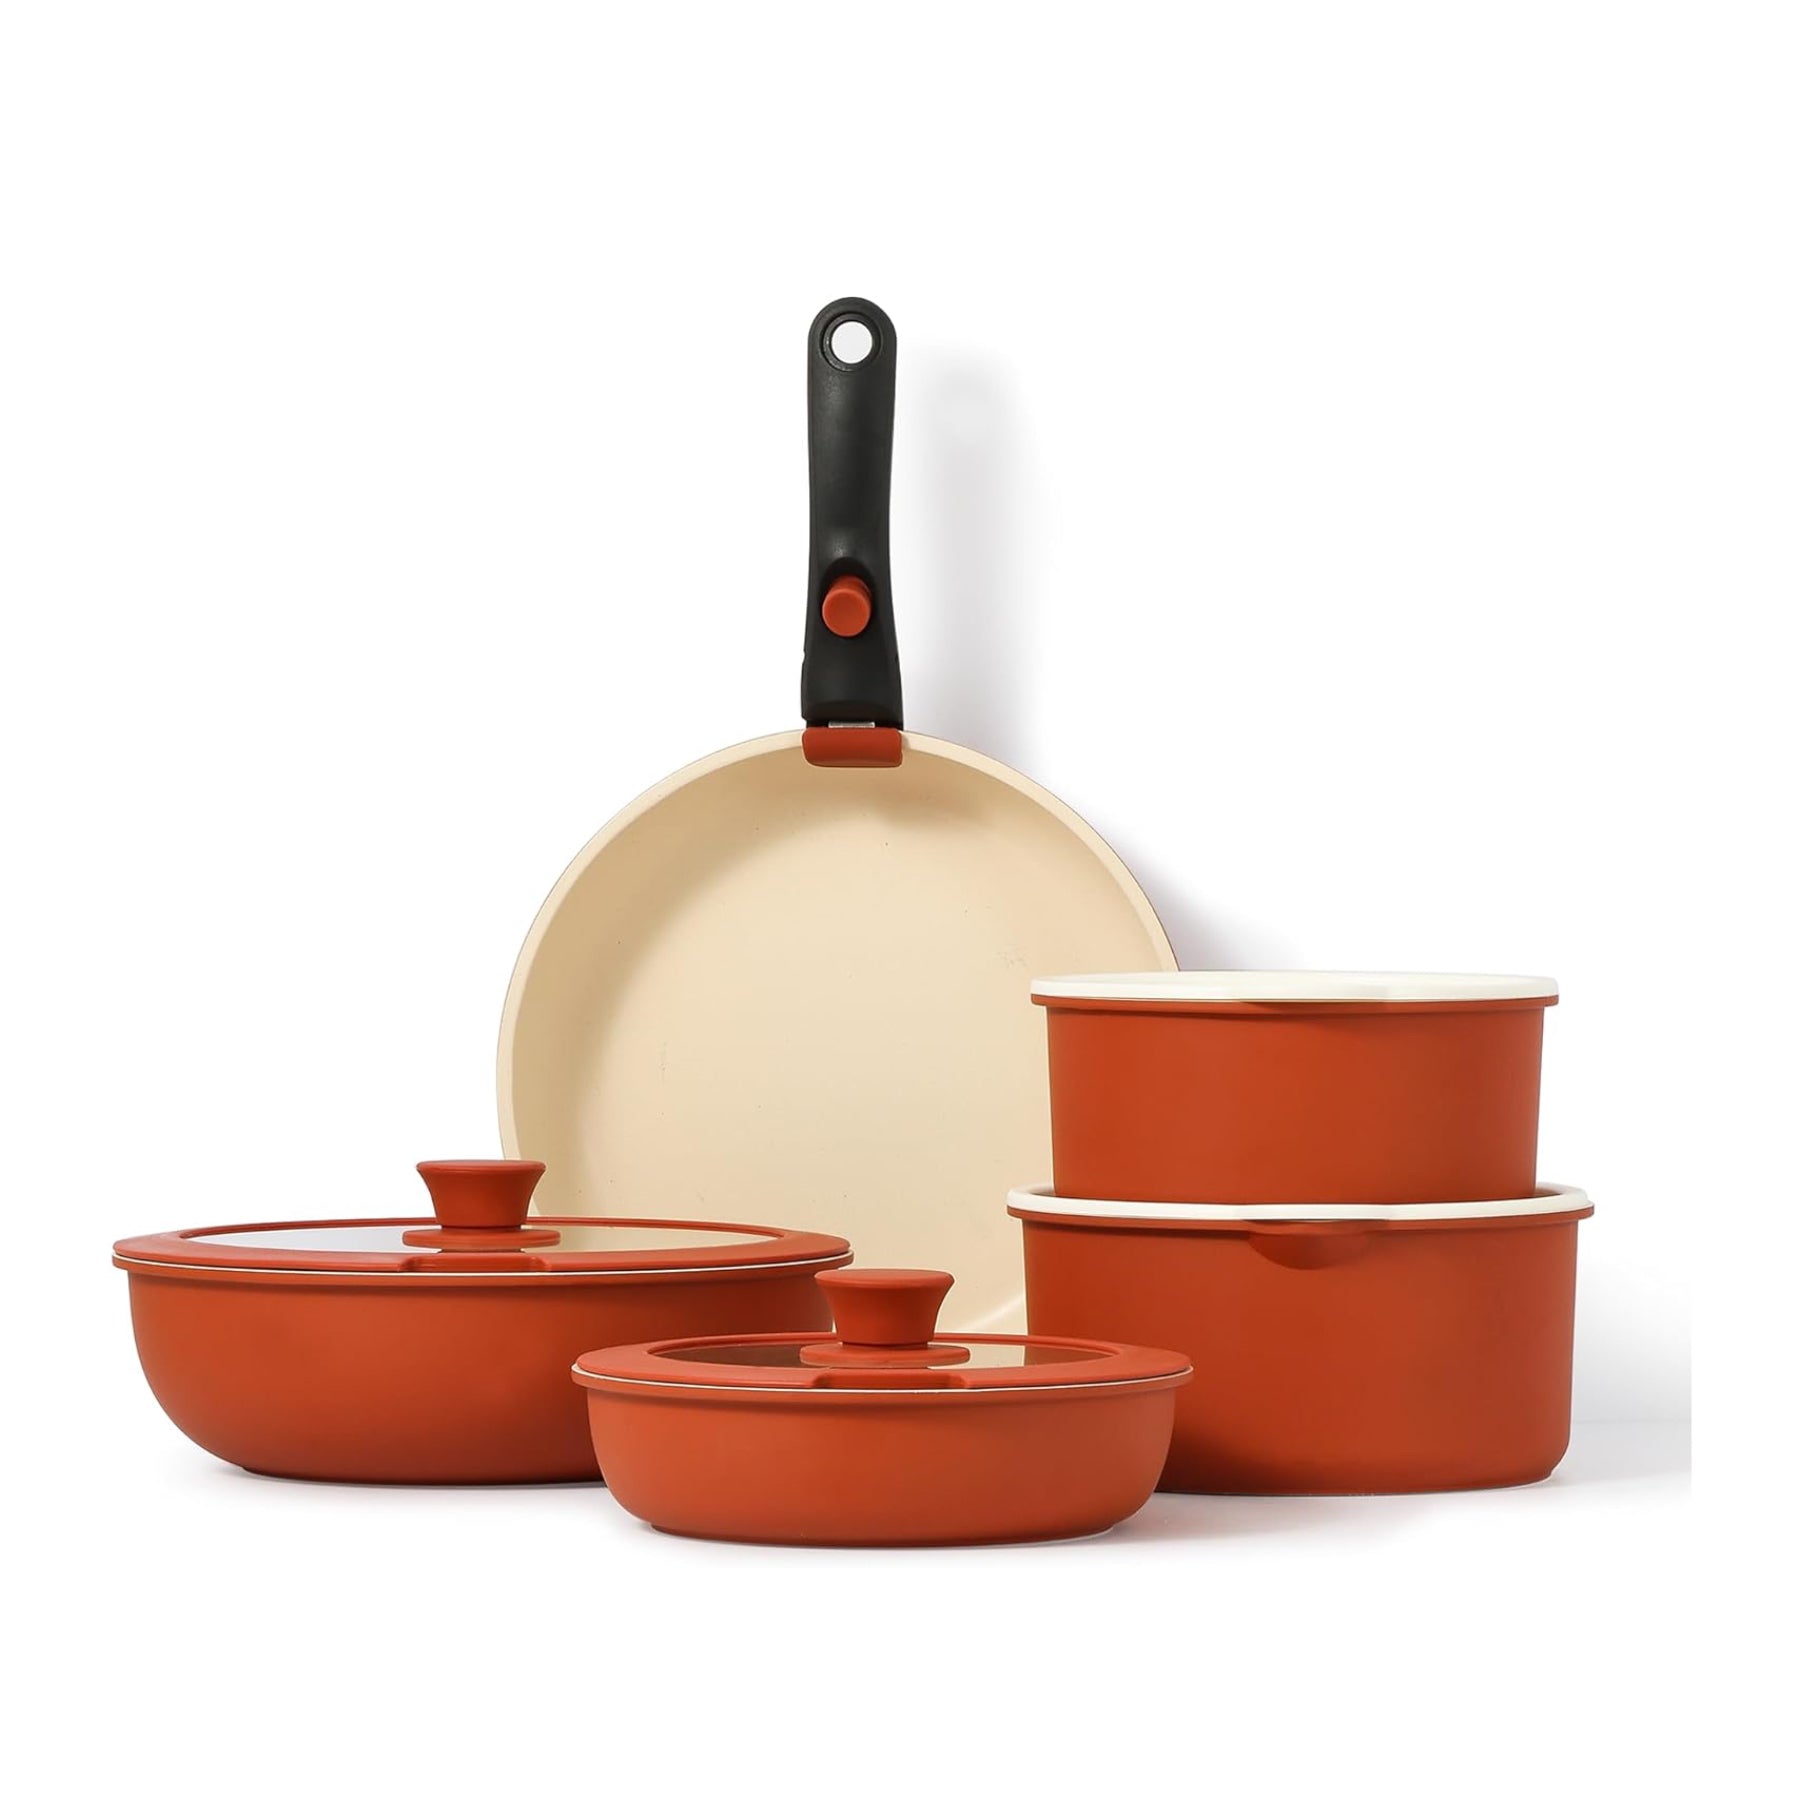 Carote Nonstick Pots and Pans Set,10 Pcs Induction Kitchen Cookware Se